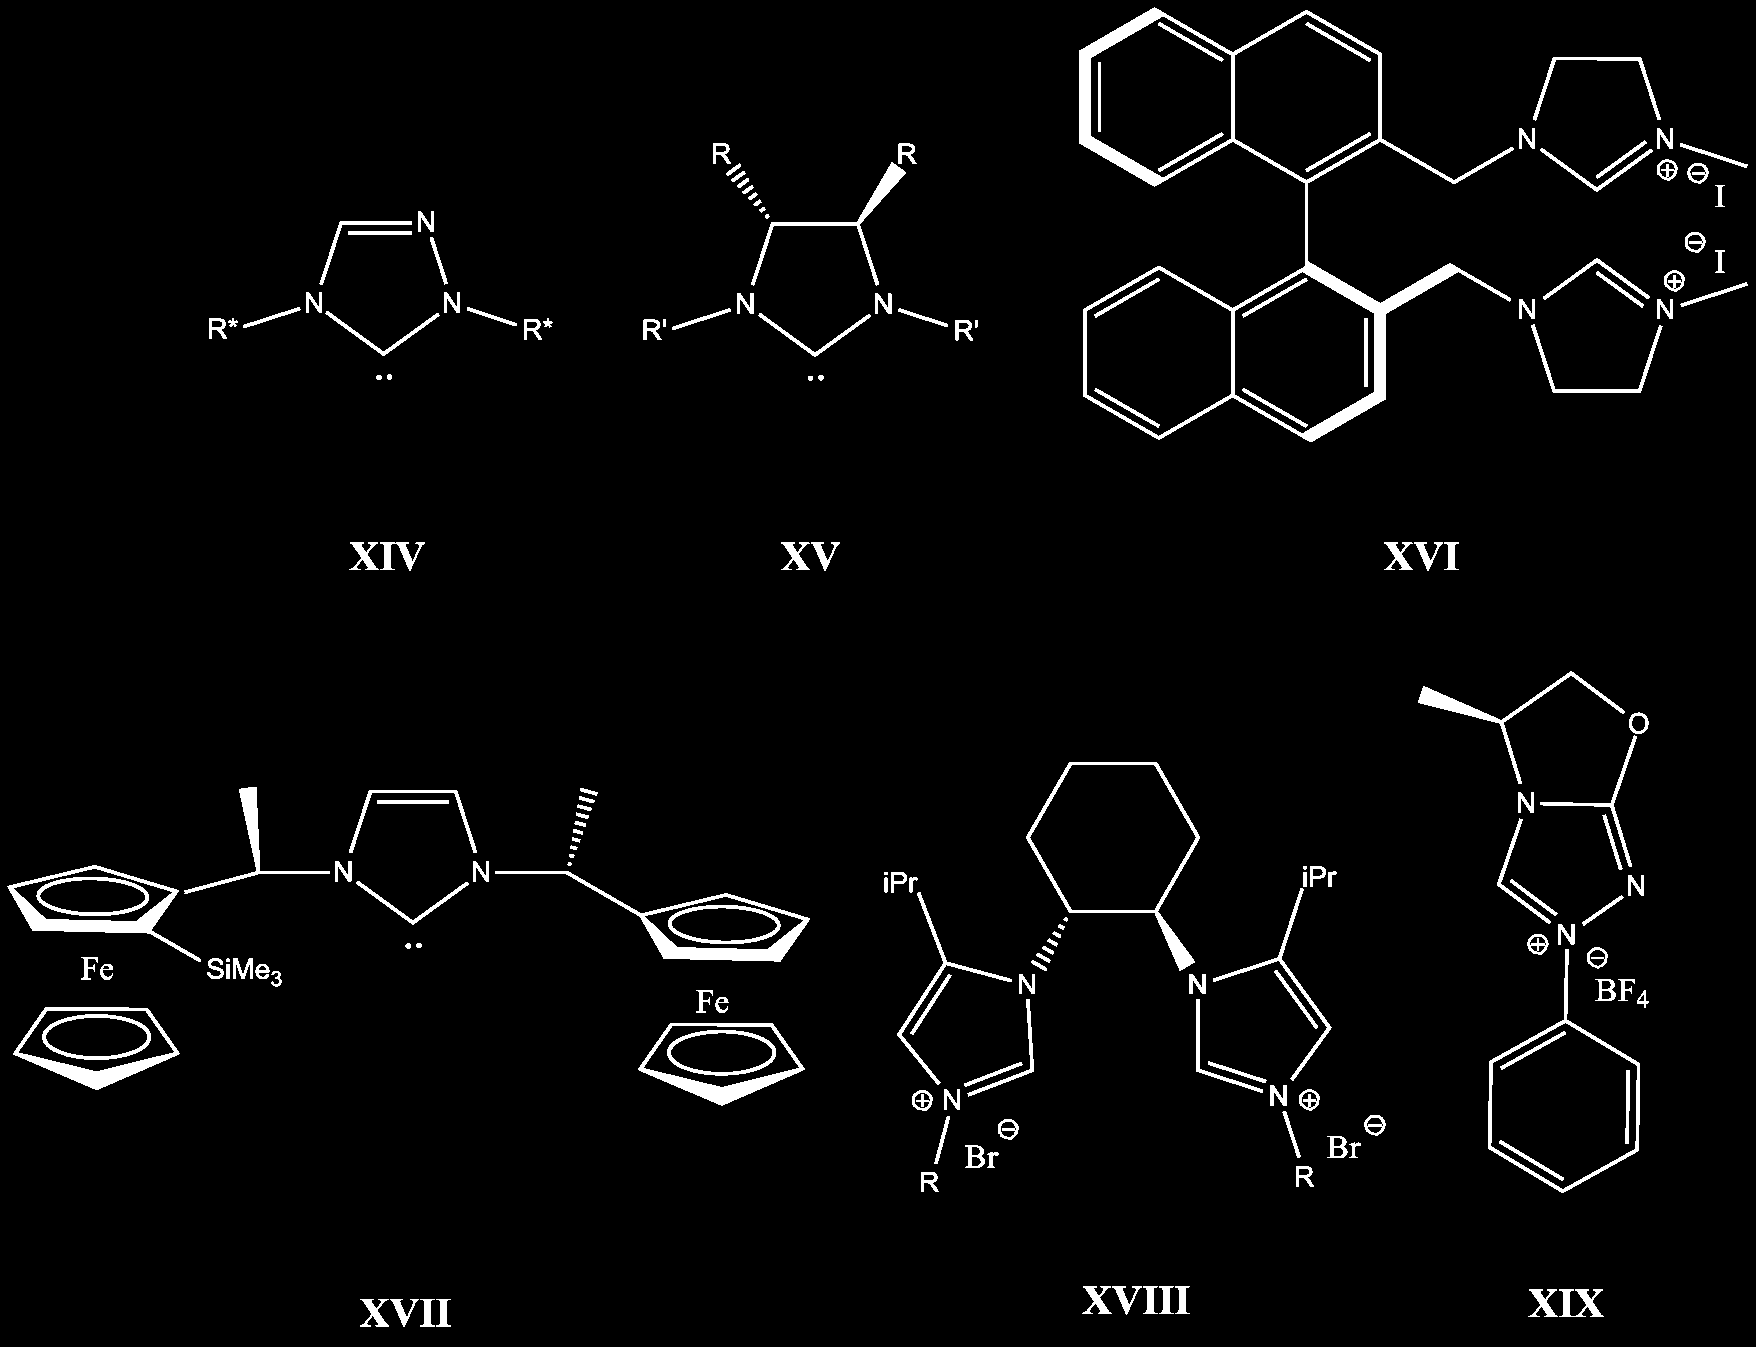 2.4 Triazolbaserte NHC-ligander 7 Seks hovedtyper kirale NHC-ligander har blitt beskrevet. 34 Eksempler på de ulike typene er vist i Figur 2.4. Disse er NHC-ligander med N -substituenter som inneholder et senter av kiralitet, XIV.